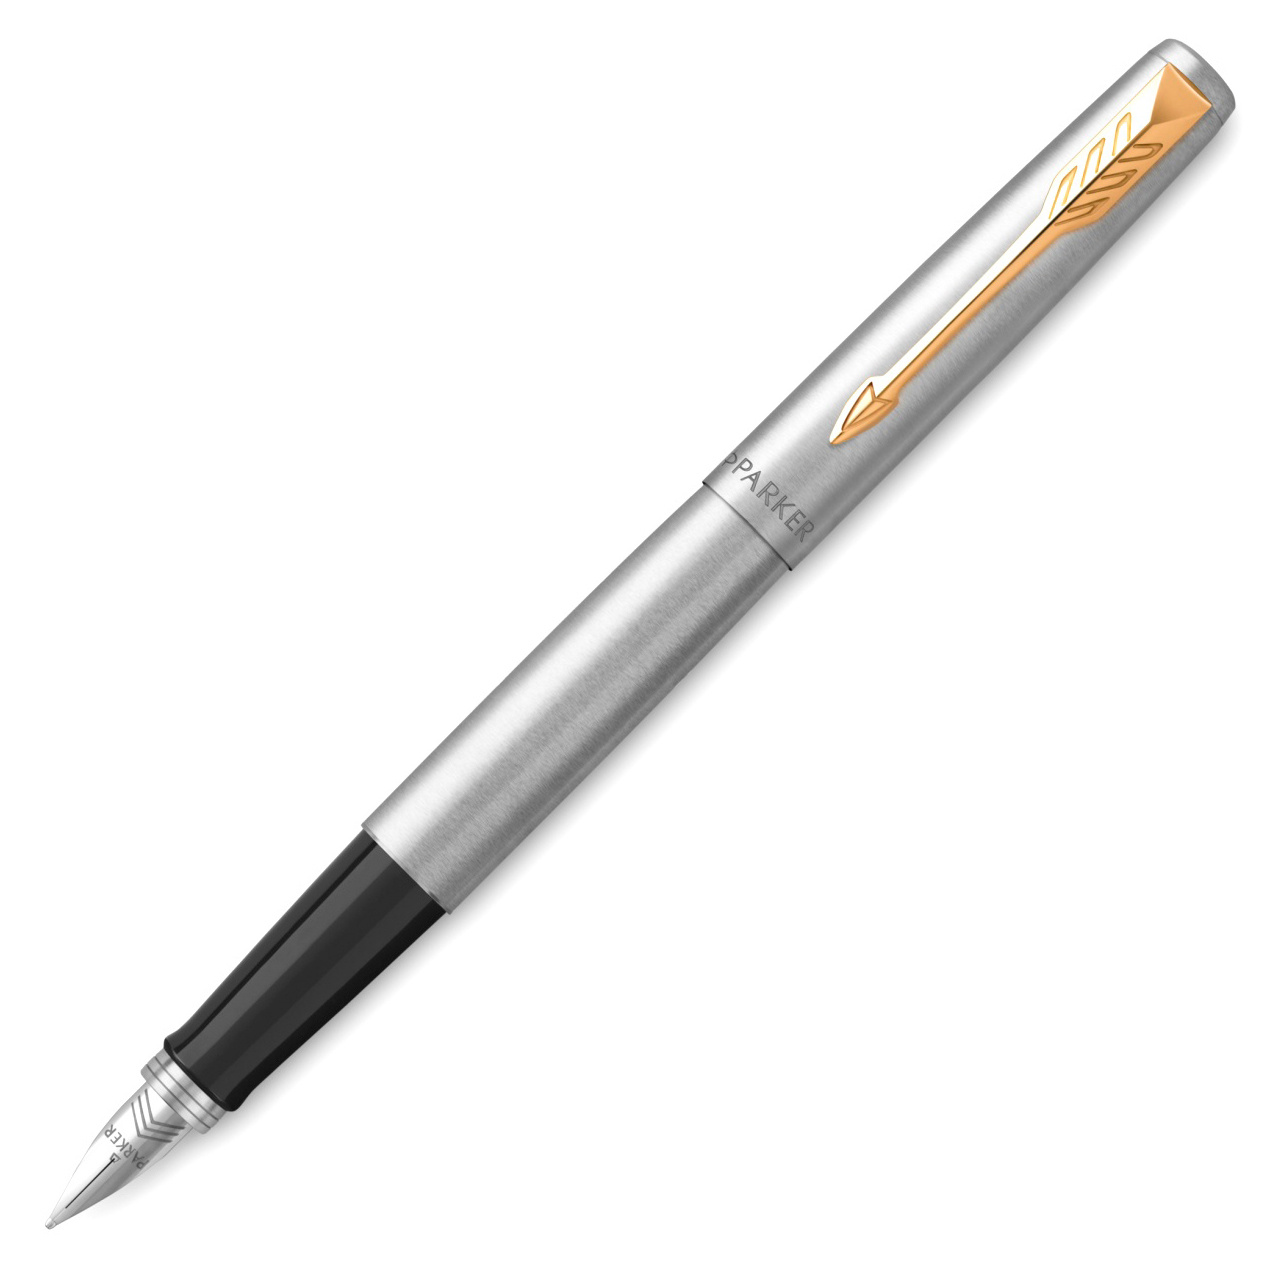 Ручка перьевая Parker Jotter Core F691, сталь нержавеющая, колпачок, подарочная упаковка (CW2030948)